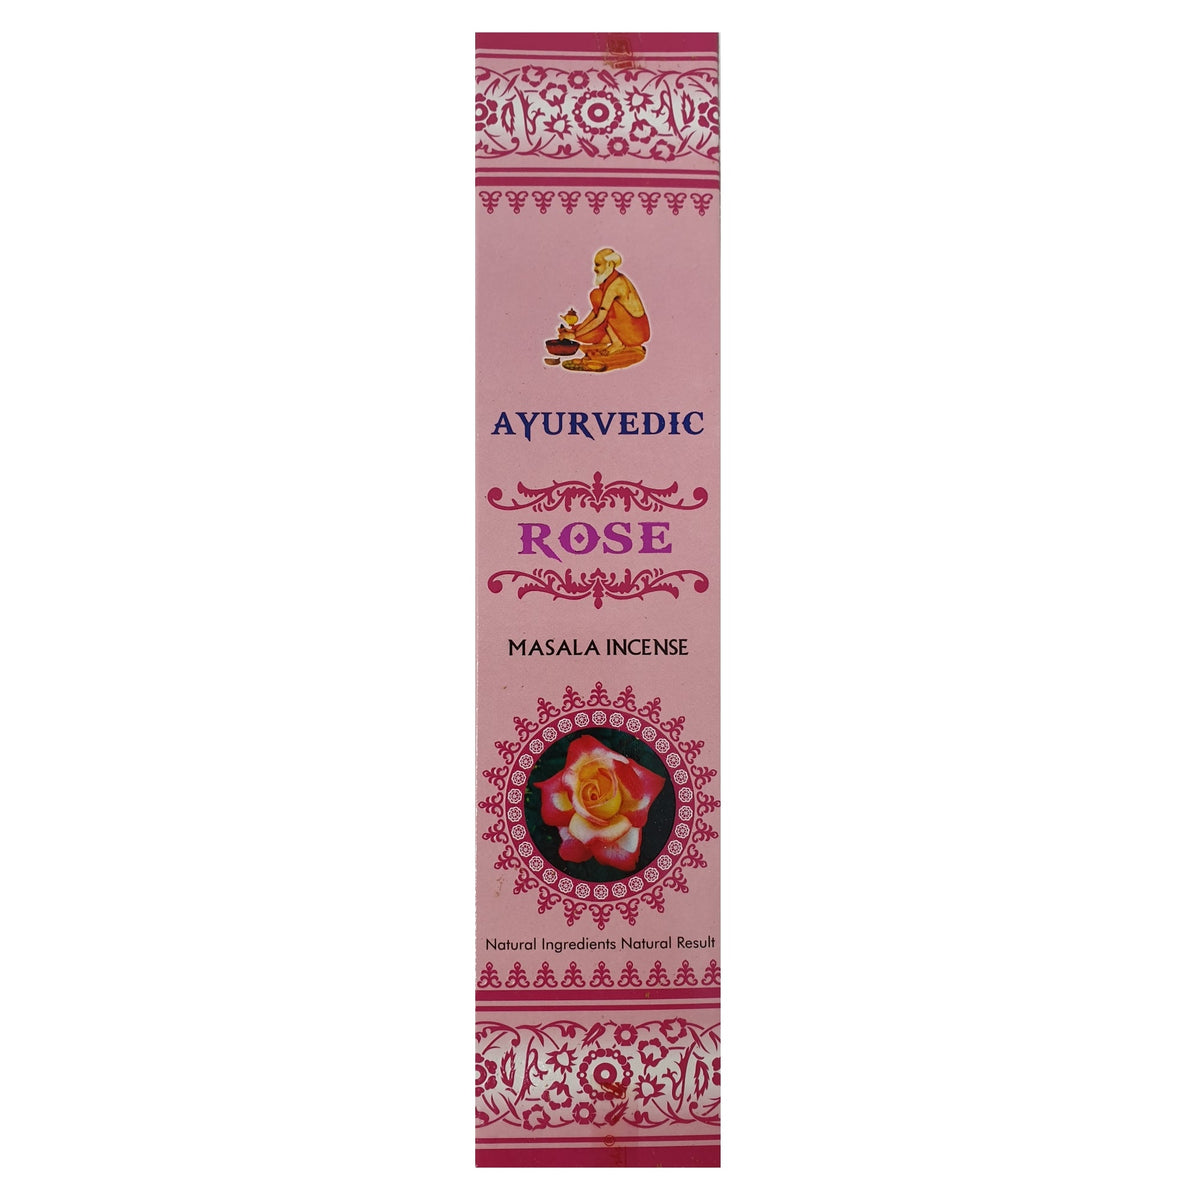 Ayurvedic - Rose - Masala Incense - Das Raeucherwerk